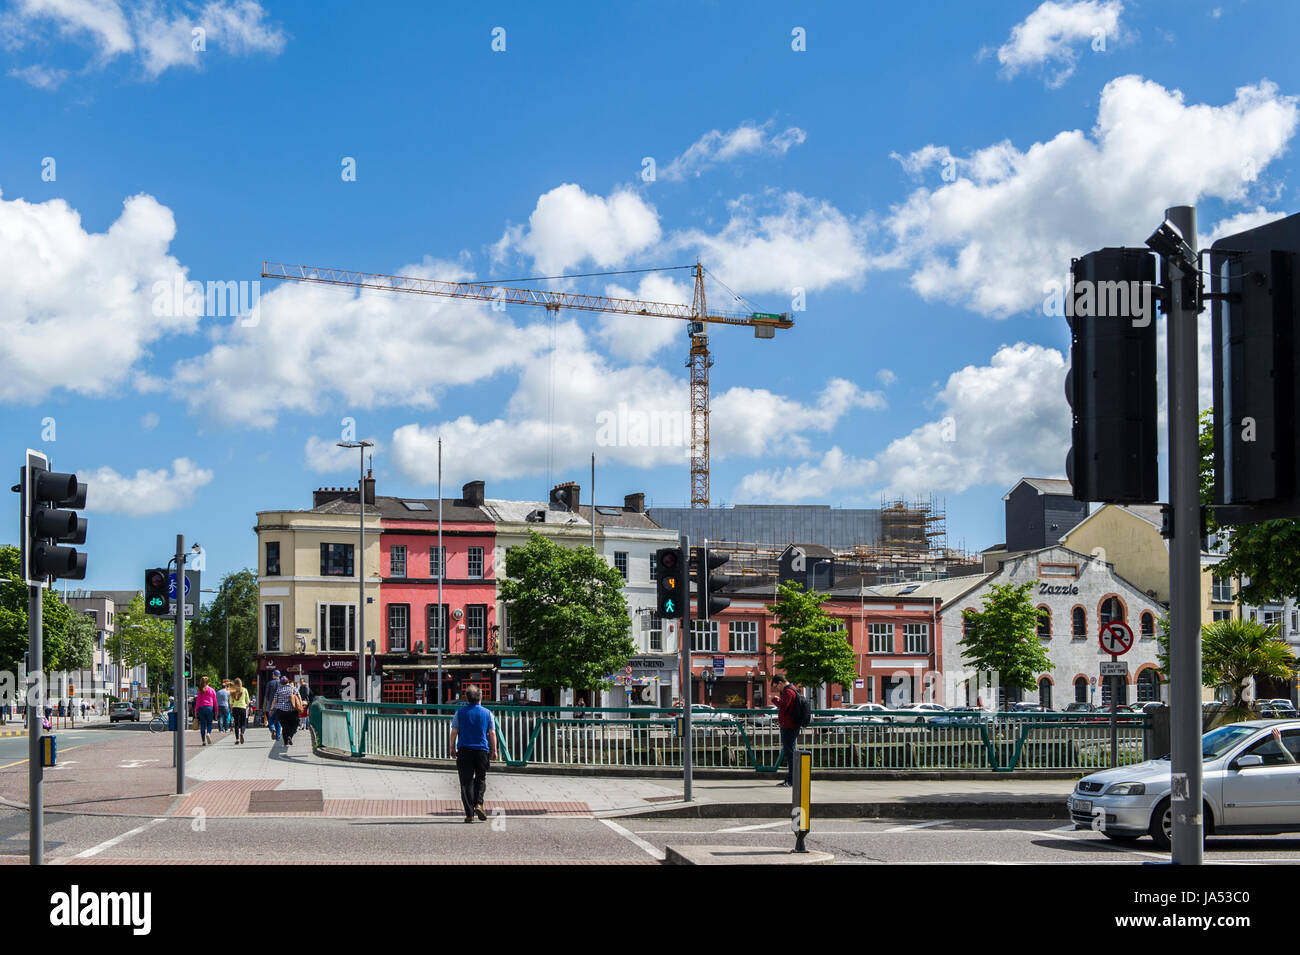 Enorme Kran dominiert die Skyline von Cork, Cork, Irland mit Textfreiraum. Stockfoto